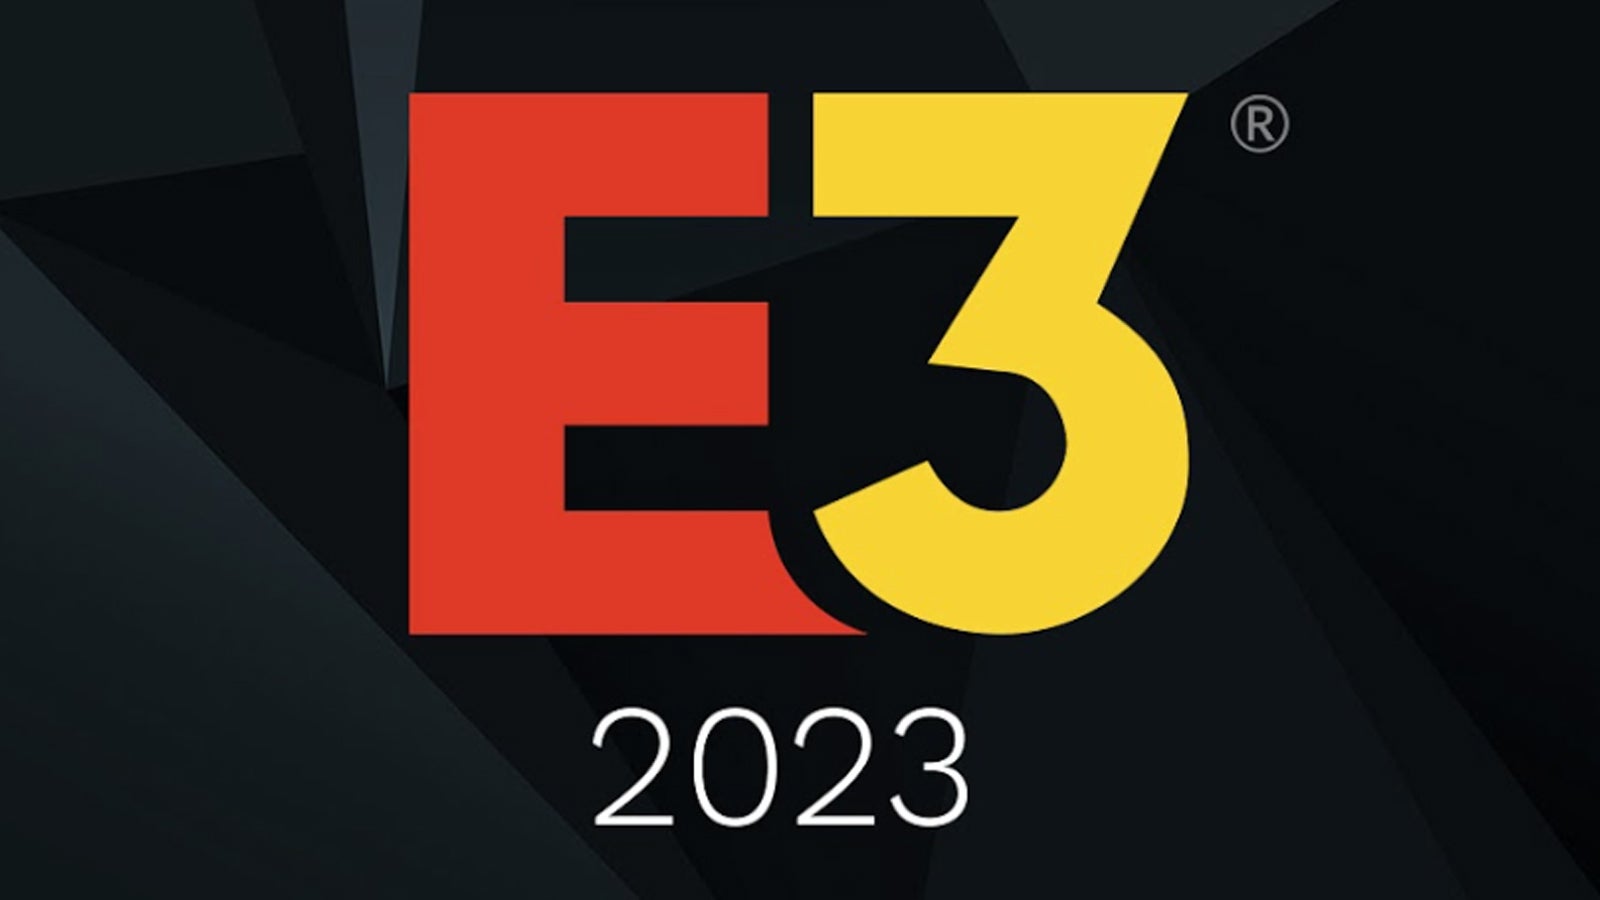 E3 2023 announces in-person show dates